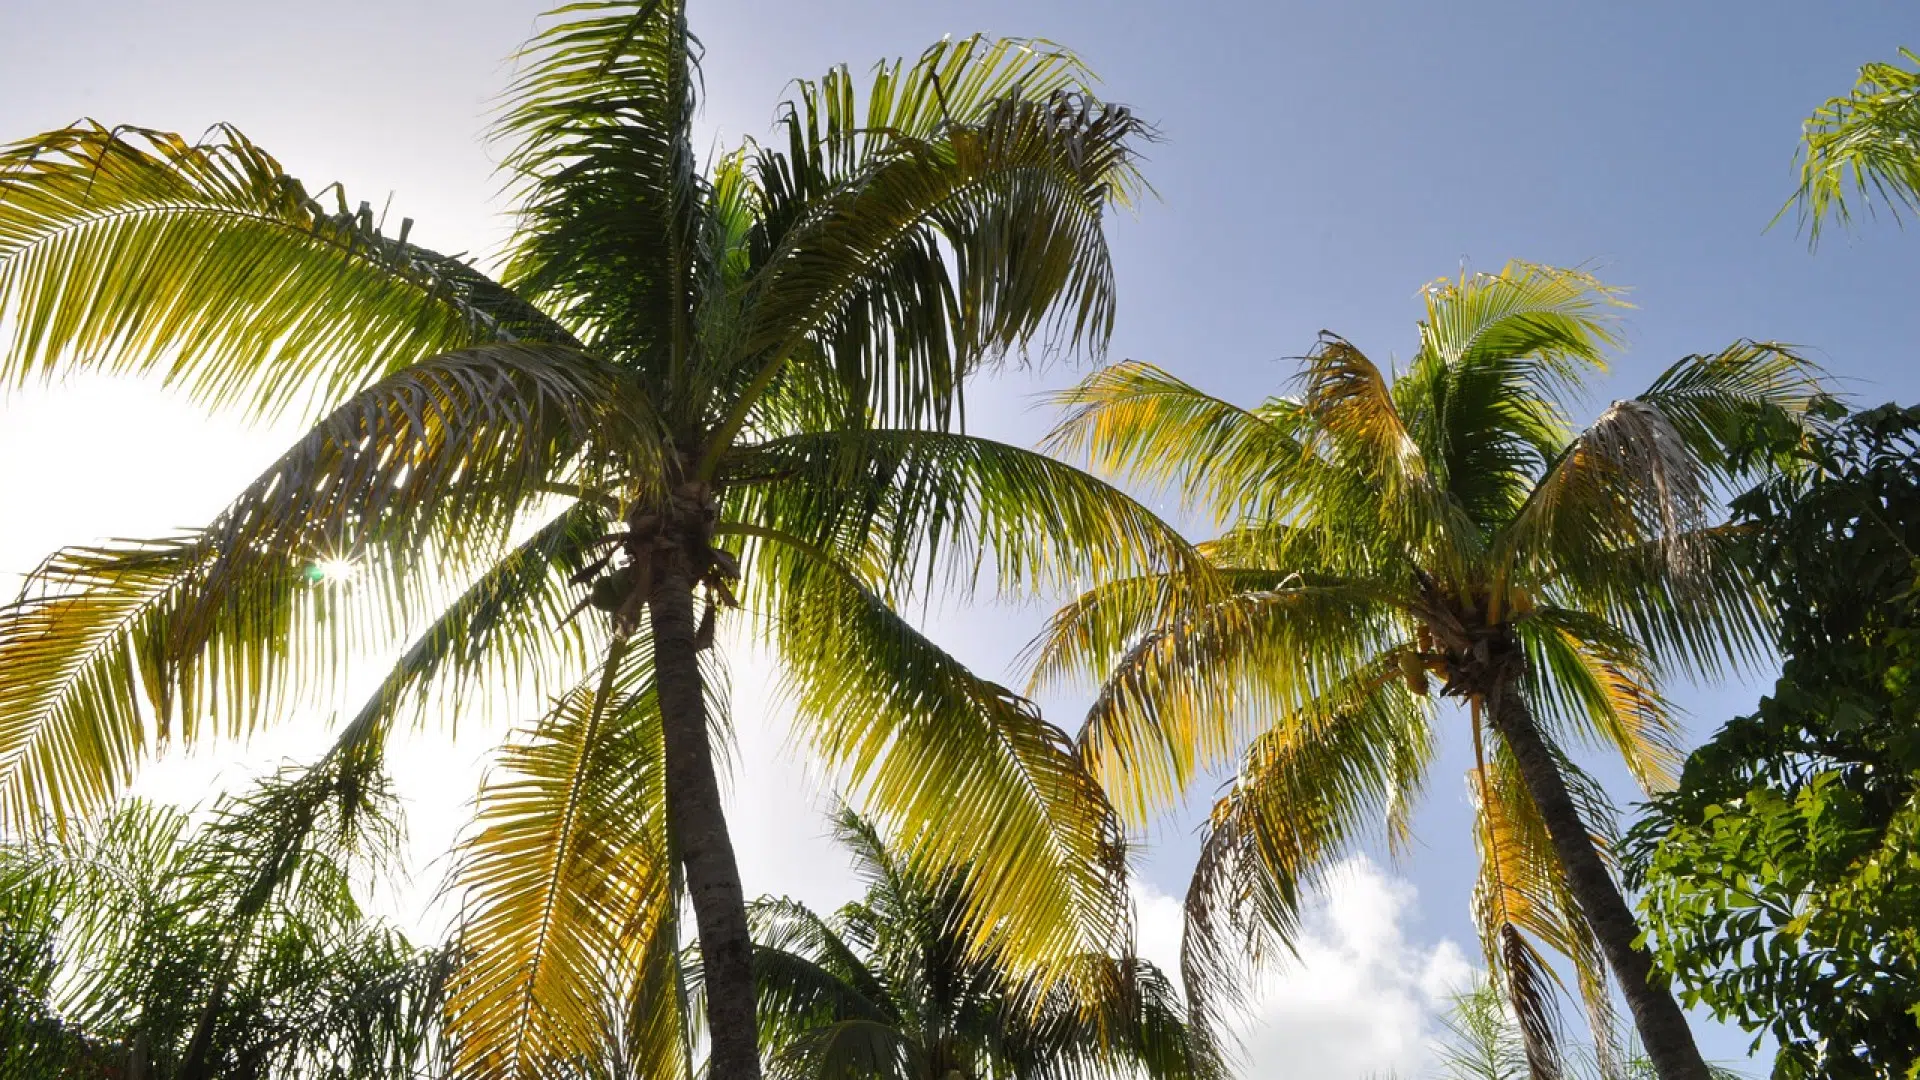 Pourquoi visiter la station balnéaire de Punta cana durant votre séjour en République dominicaine ?